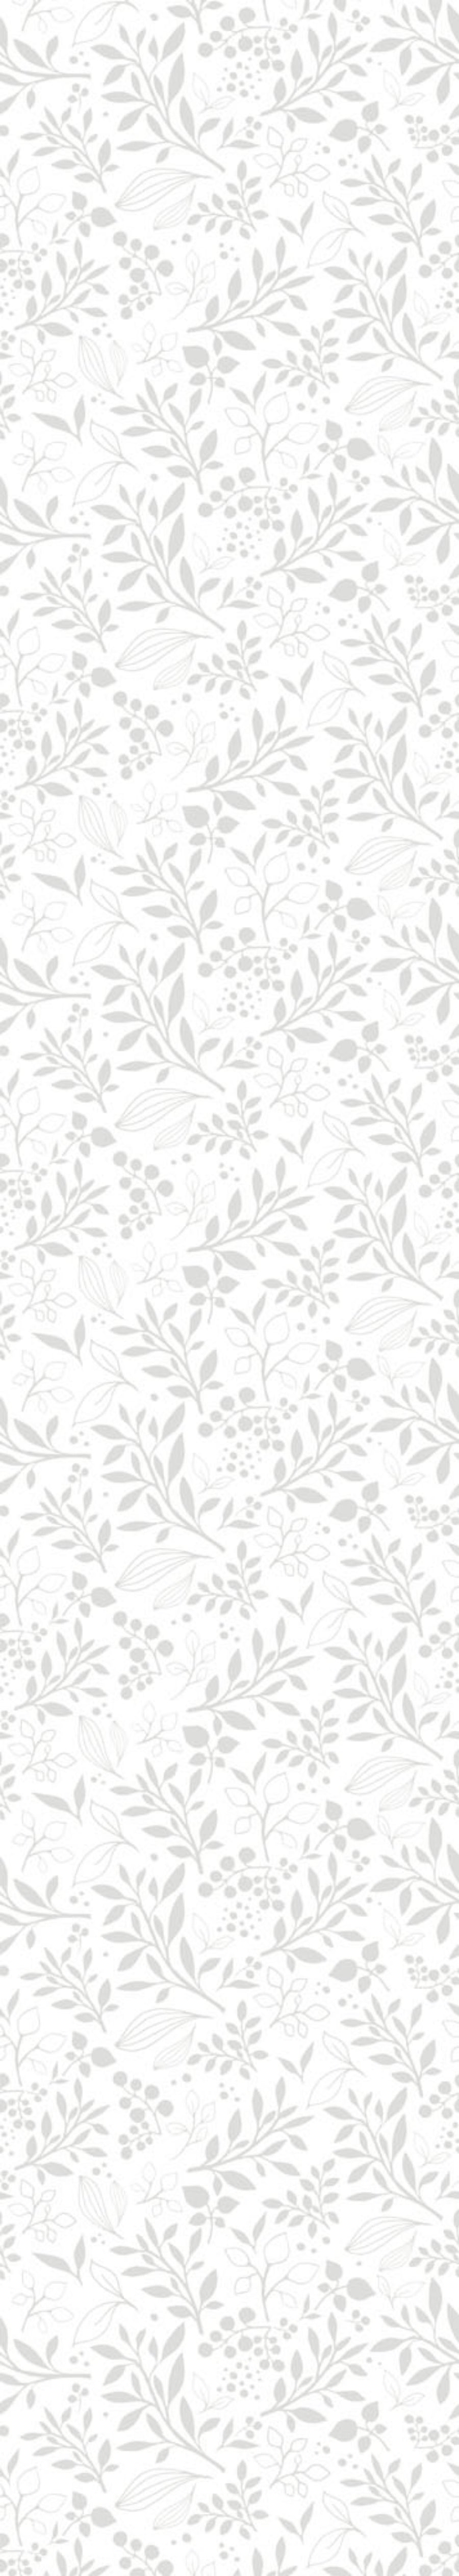 Subtle Flowers Gray Wallpaper 50x280CM